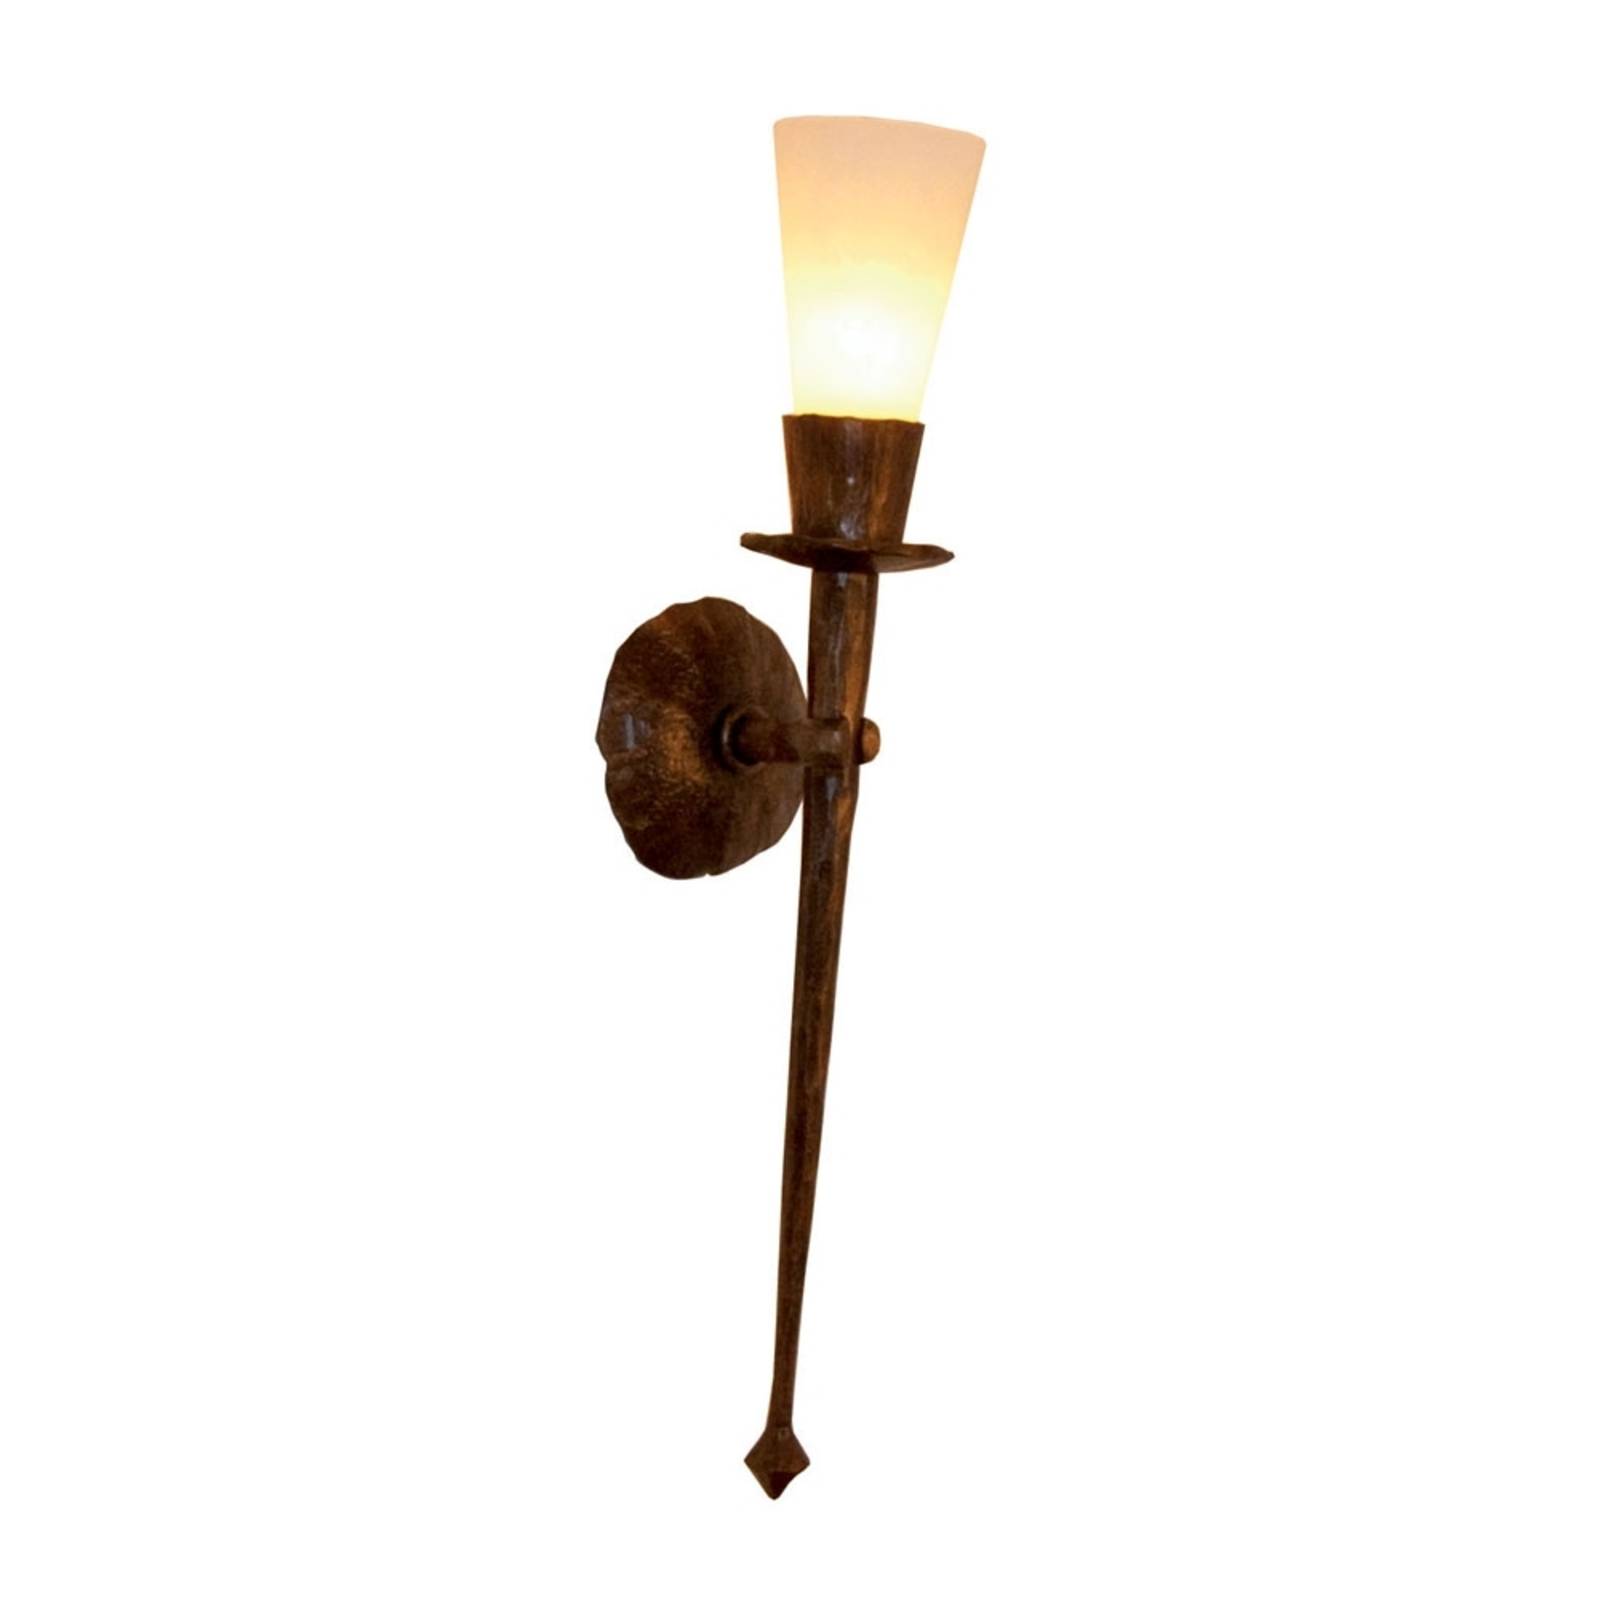 Handgesmede wandlamp CHATEAU